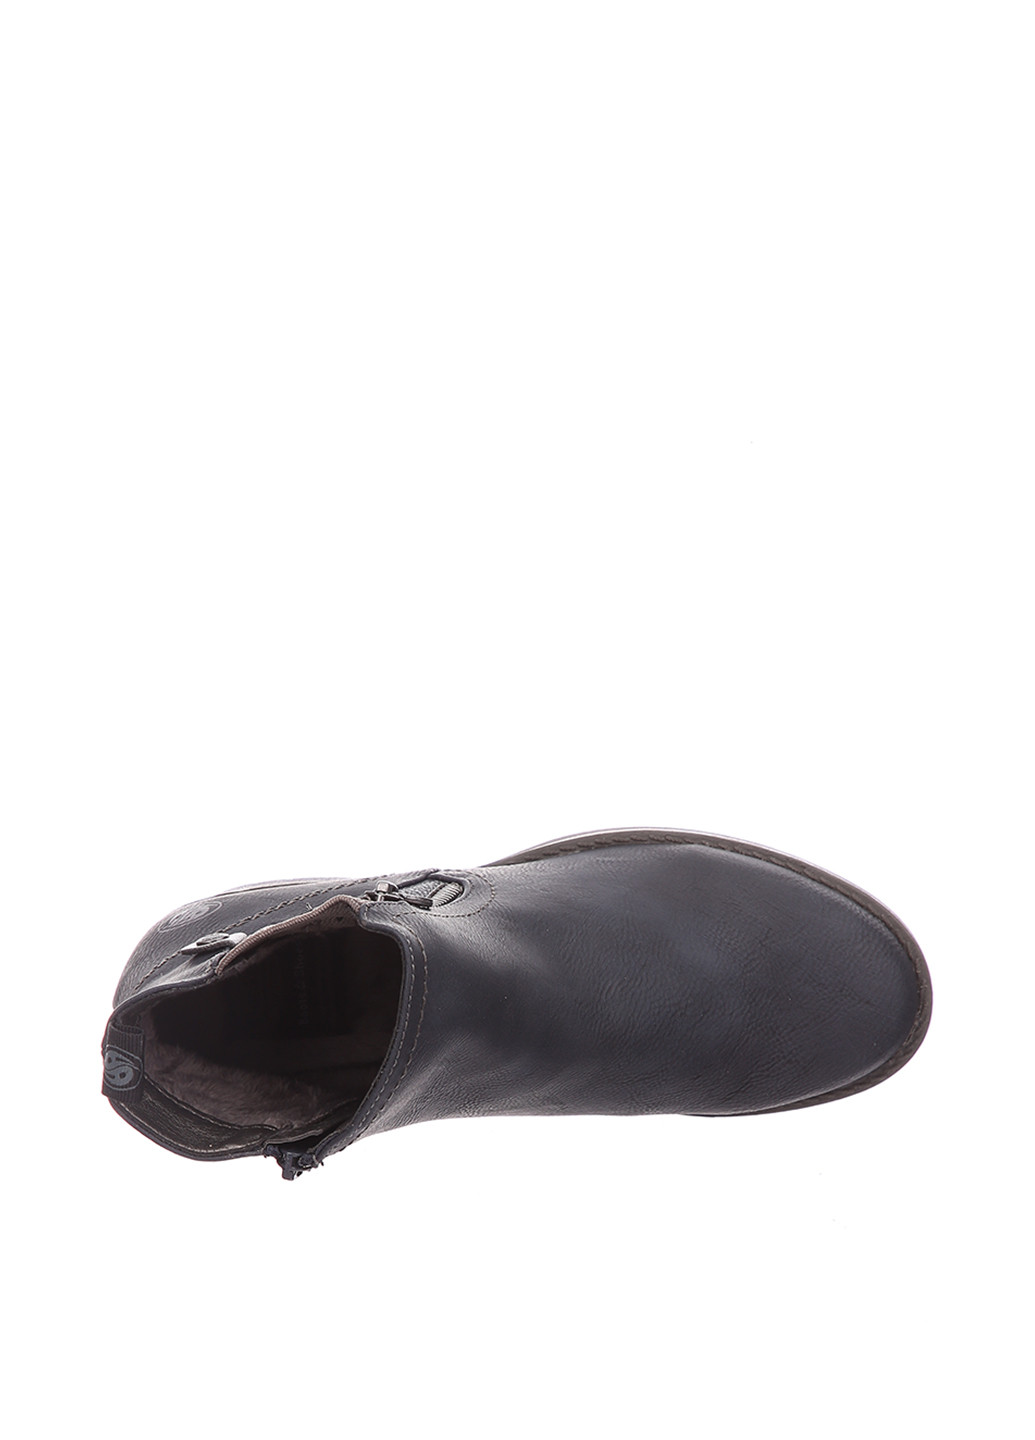 Осенние ботинки Dockers с заклепками, с молнией из искусственной кожи, тканевые